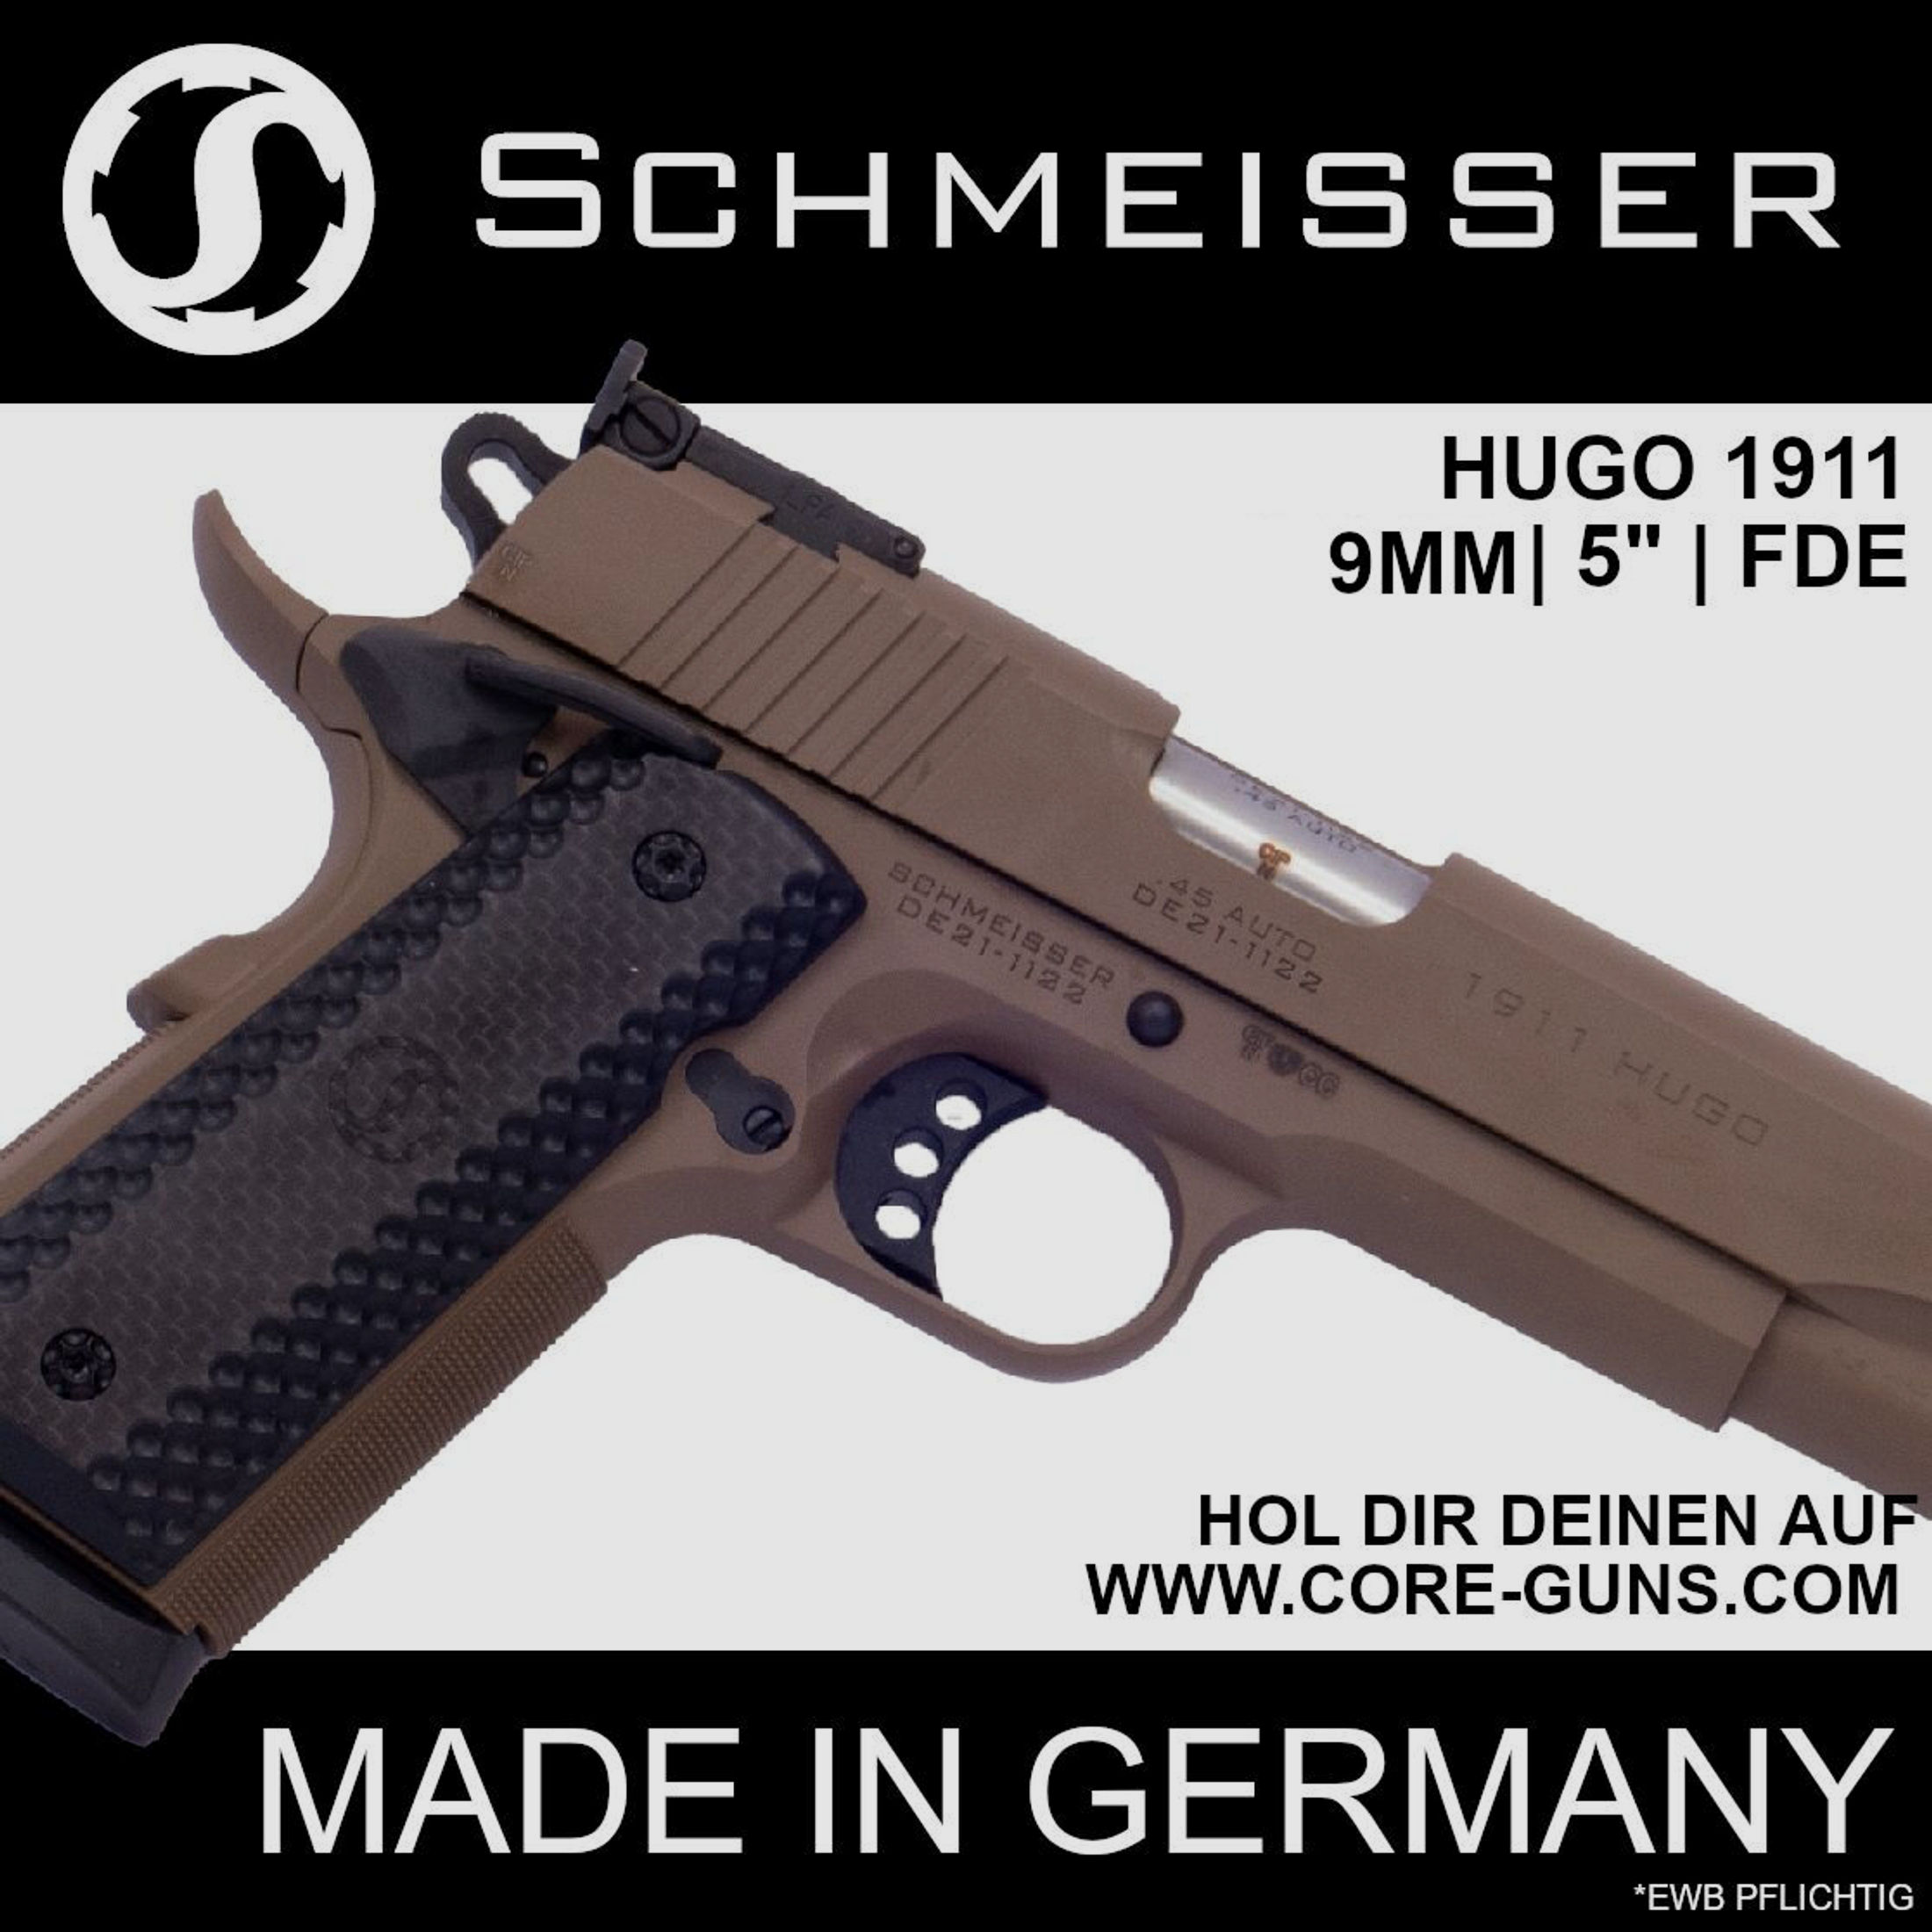 Schmeisser Hugo 1911 Pistole, Kaliber 9mm in FDE, 5" LL *EWB Pflichtig	 UVP: 2009€